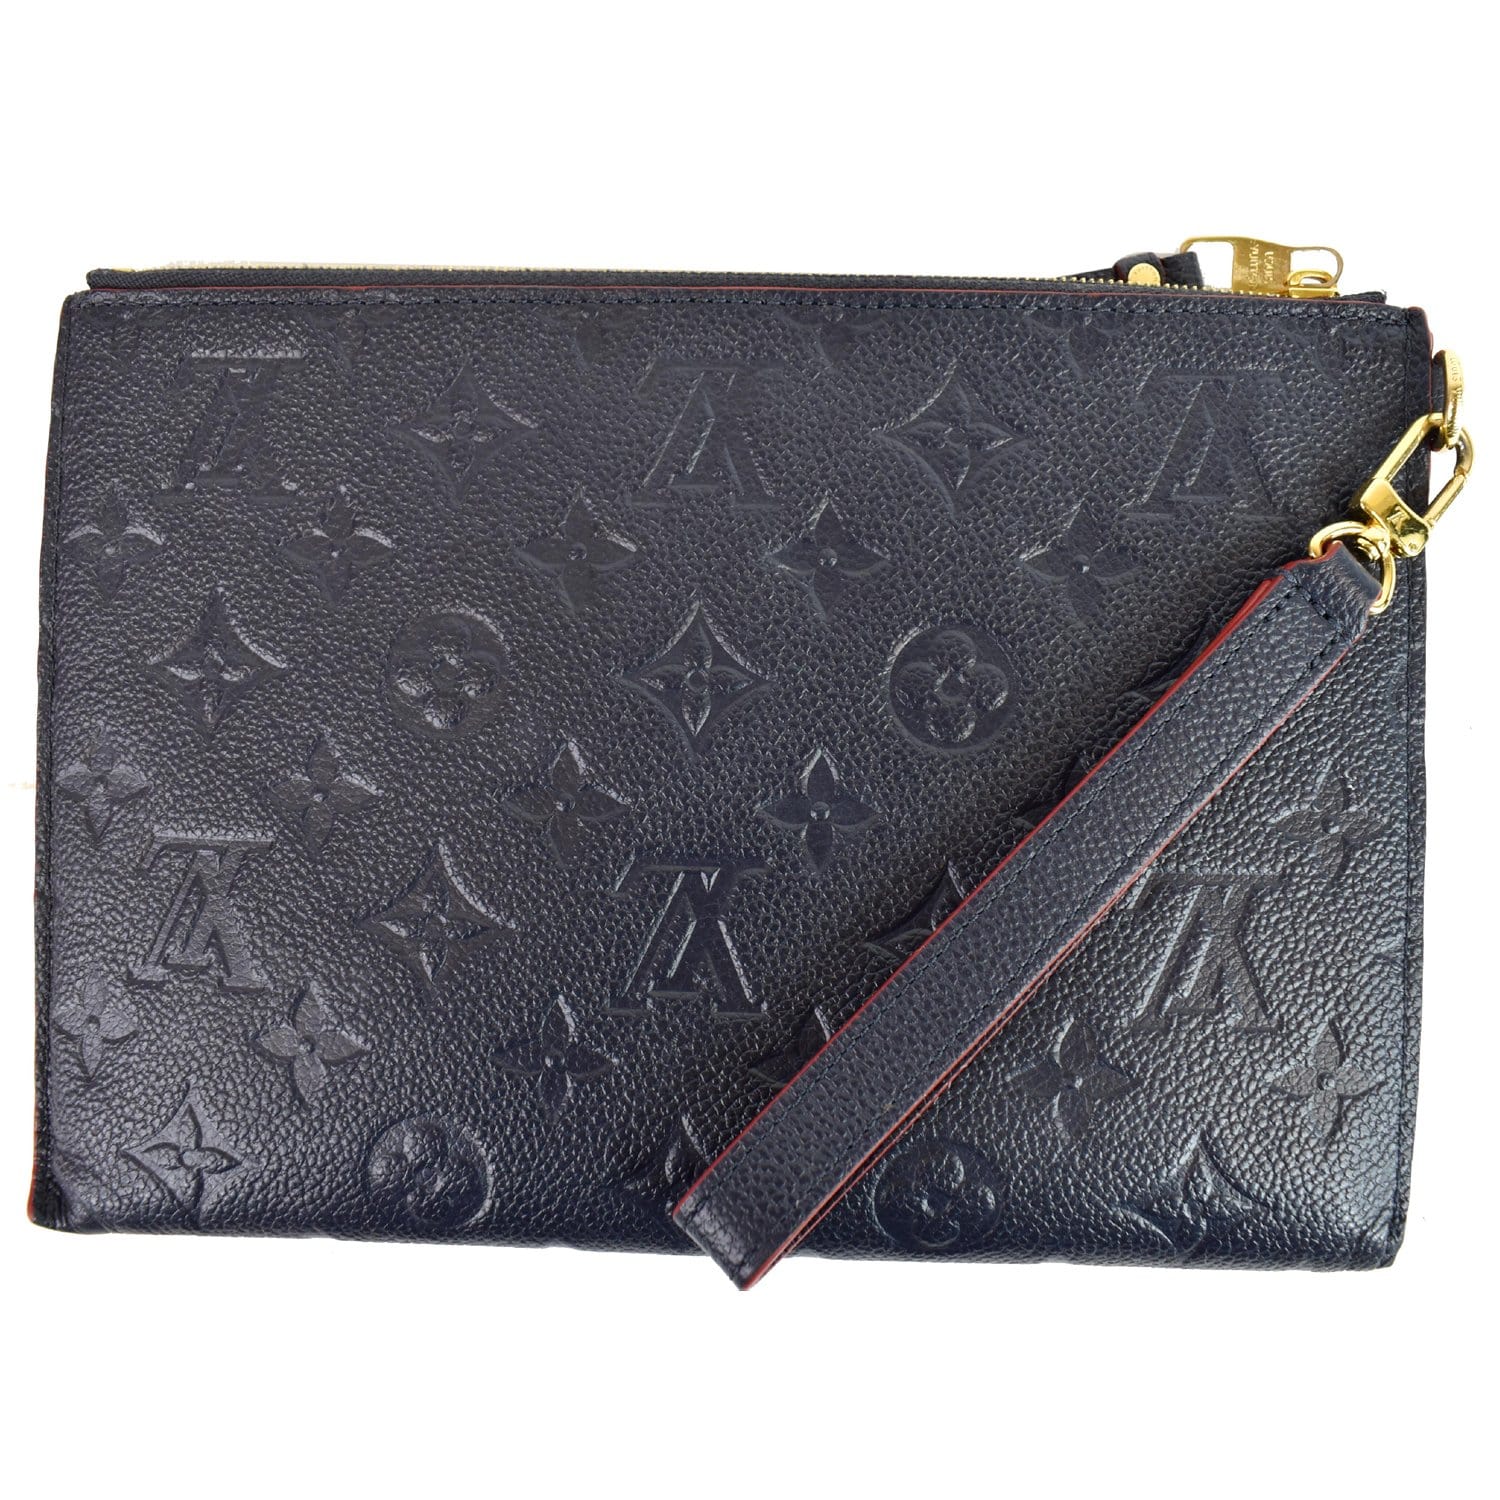 lv black clutch purse